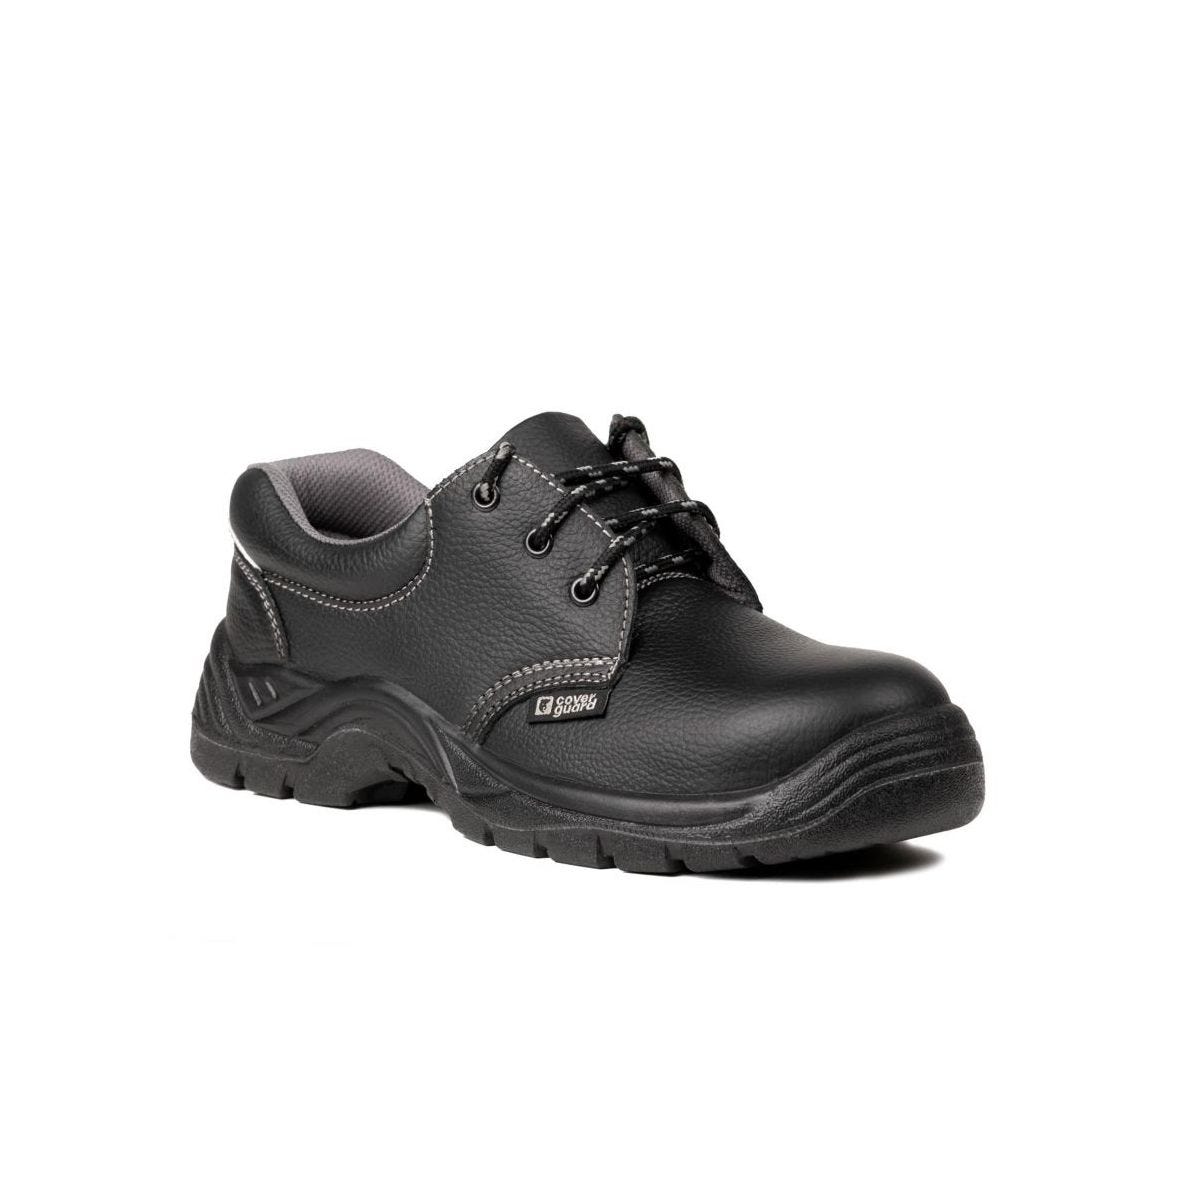 Chaussures de sécurité basses AGATE II S3 Noir - Coverguard - Taille 35 0